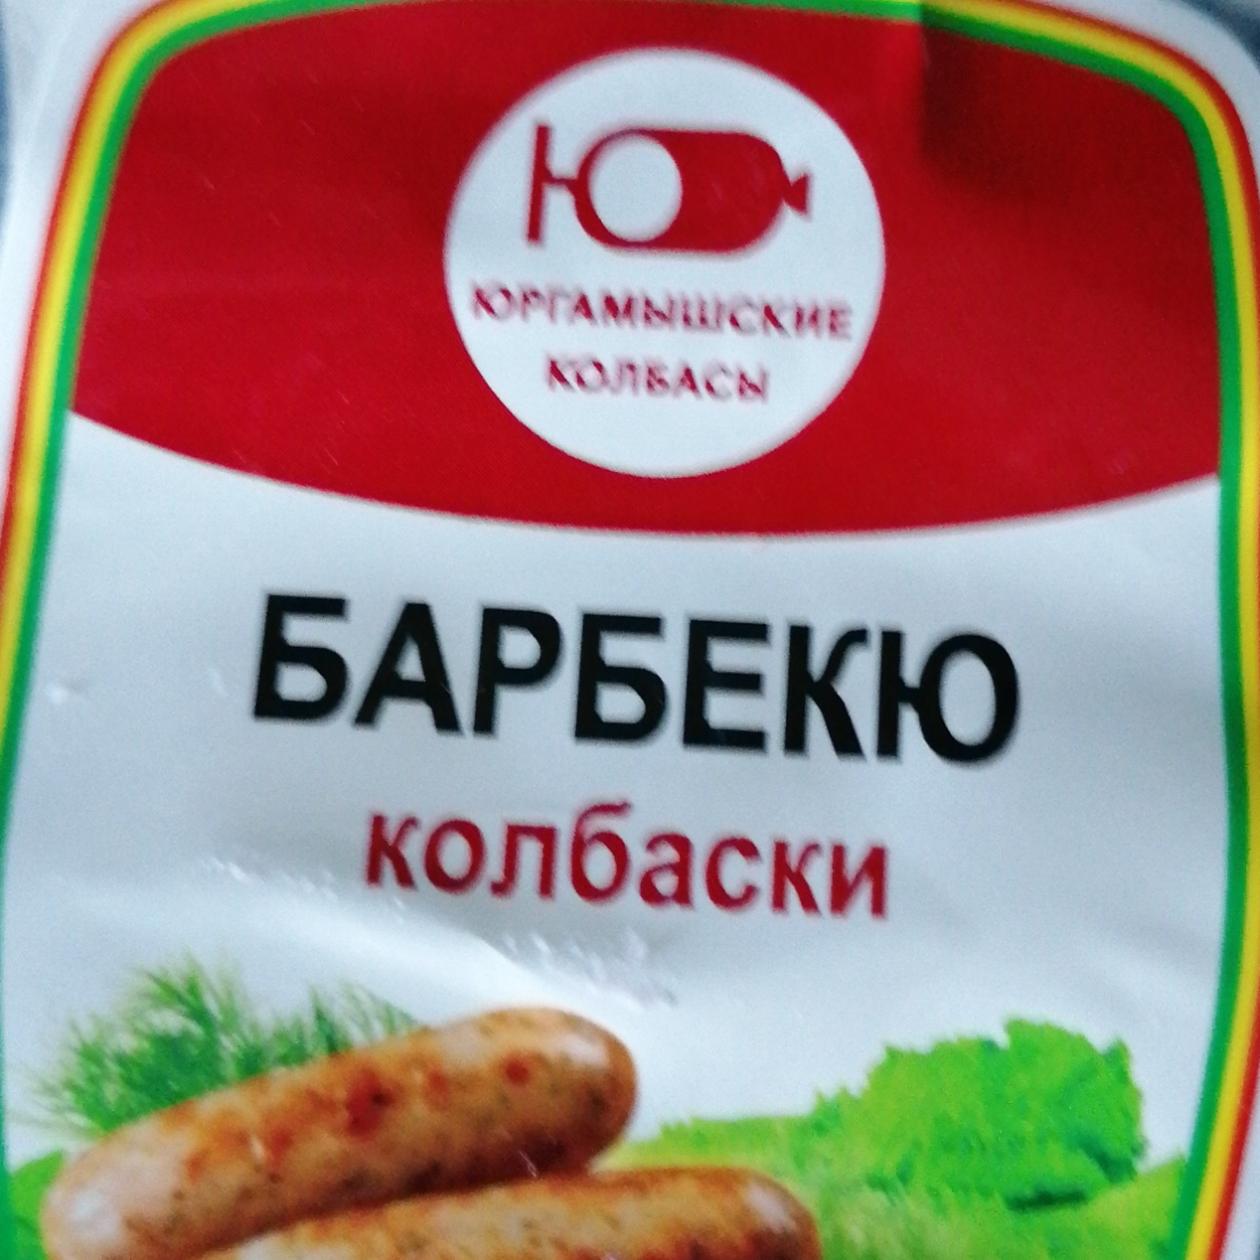 Фото - Колбаски барбекю Юргамышинские колбасы